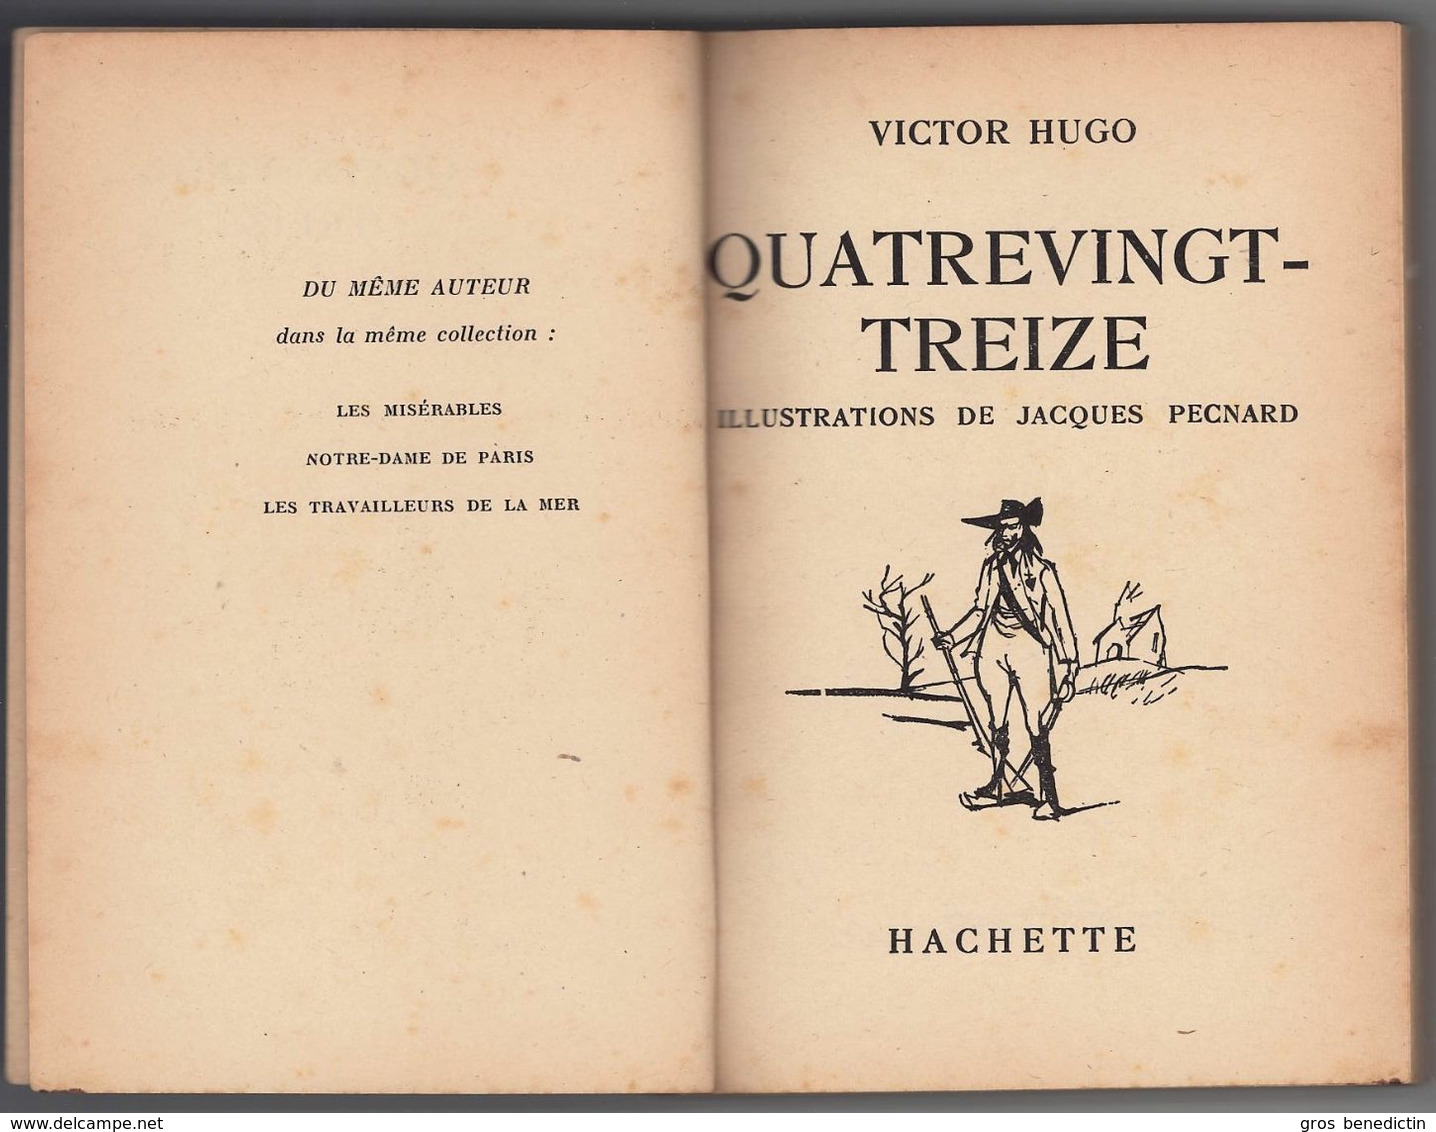 Hachette - Bibliothèque De La Jeunesse Avec Jaquette - Victor Hugo - "Quatrevingt-treize" - 1956 - #Ben&BJanc - Bibliothèque De La Jeunesse